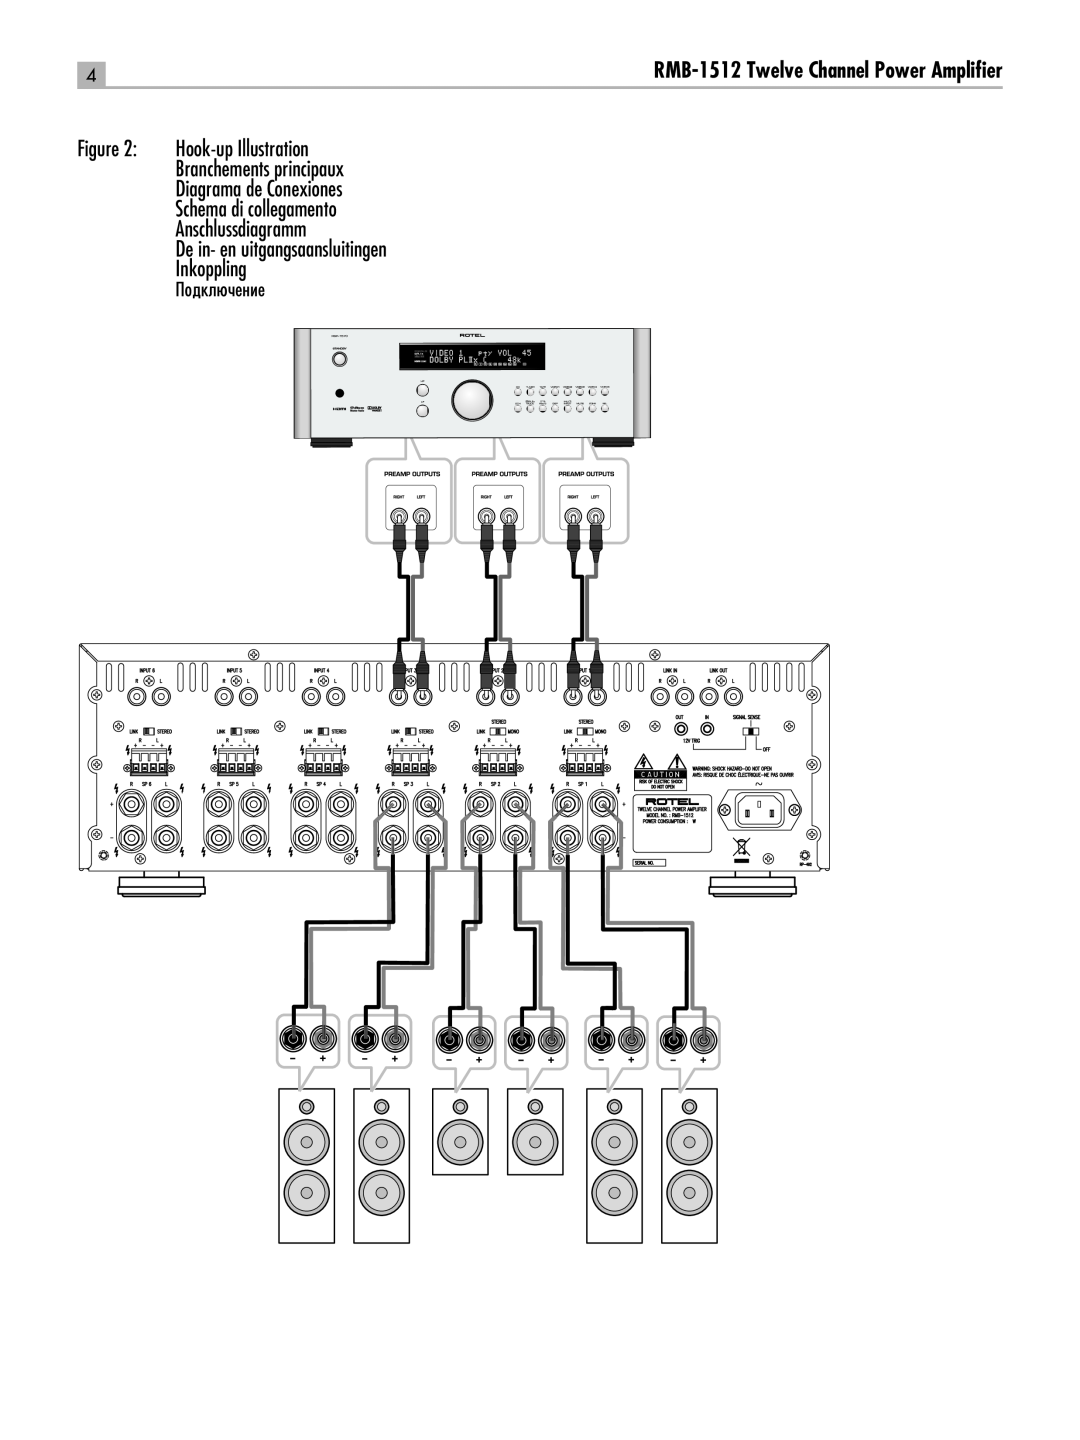 Rotel RC-1580 owner manual Hook-upIllustration, Branchements principaux Diagrama de Conexiones, Подключение 